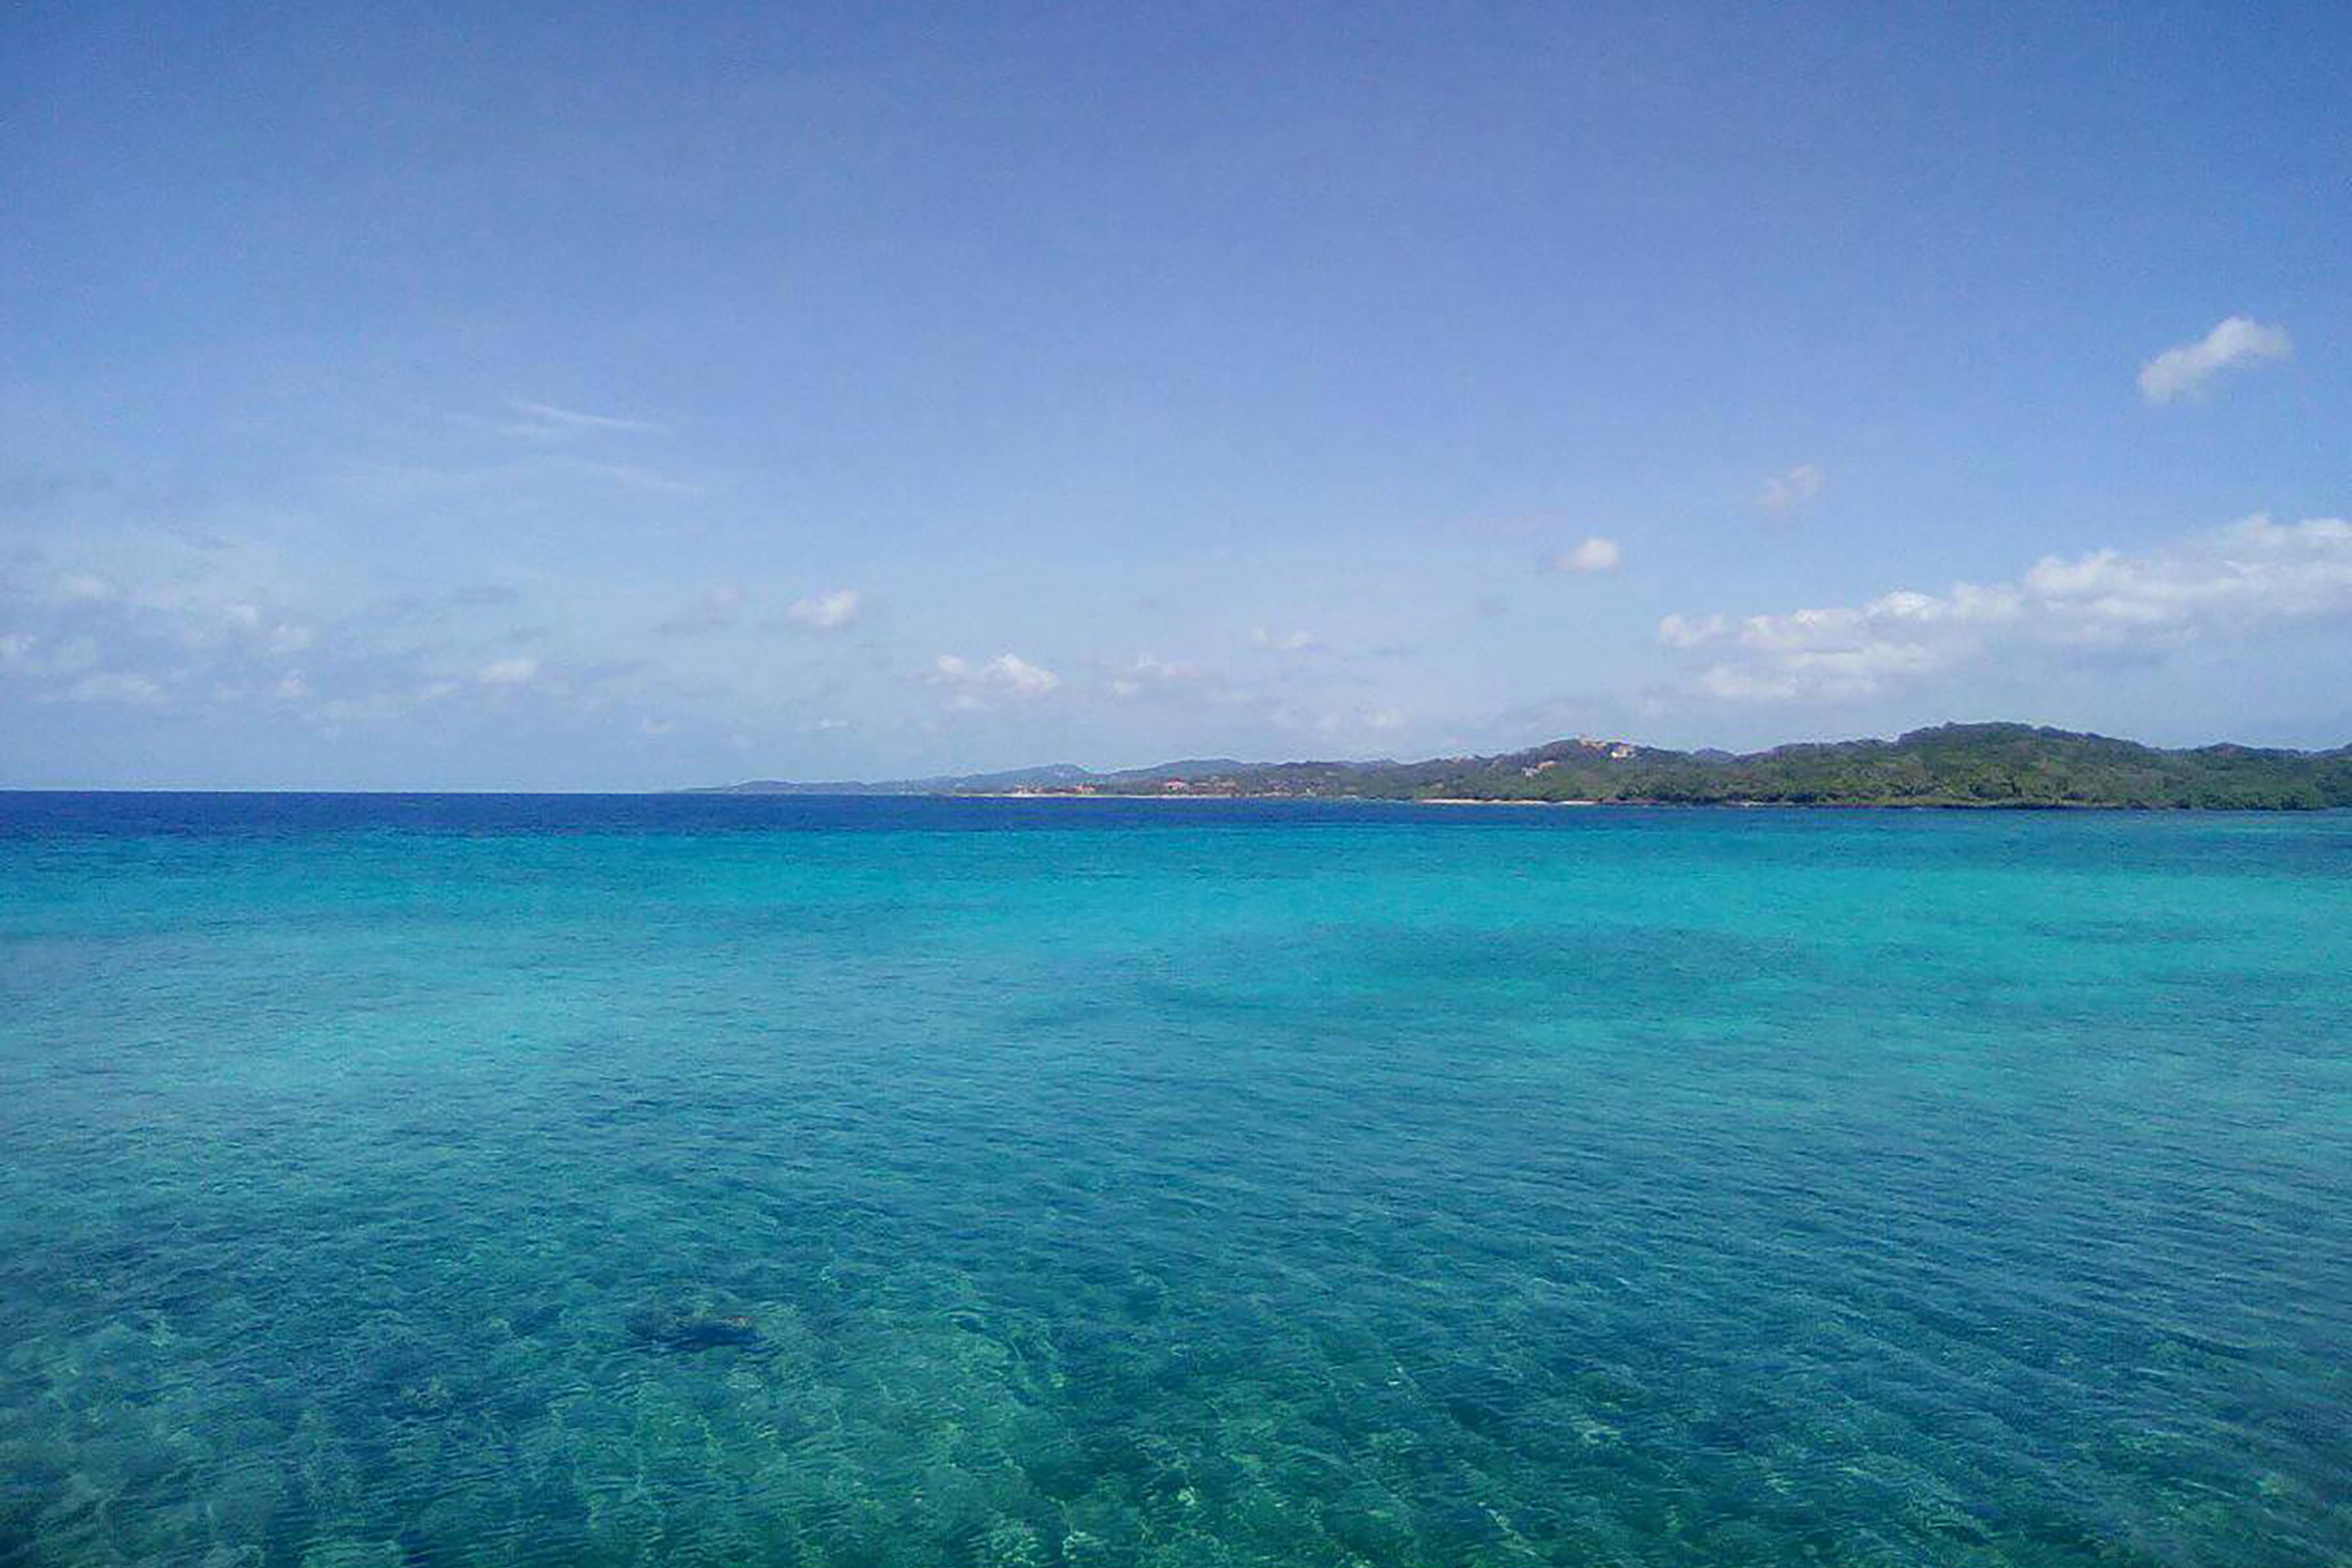 Las islas de la Bahía están rodeadas de arrecifes Coralinos. Image from Wikimedia Commons by Luis Alfredo Romero